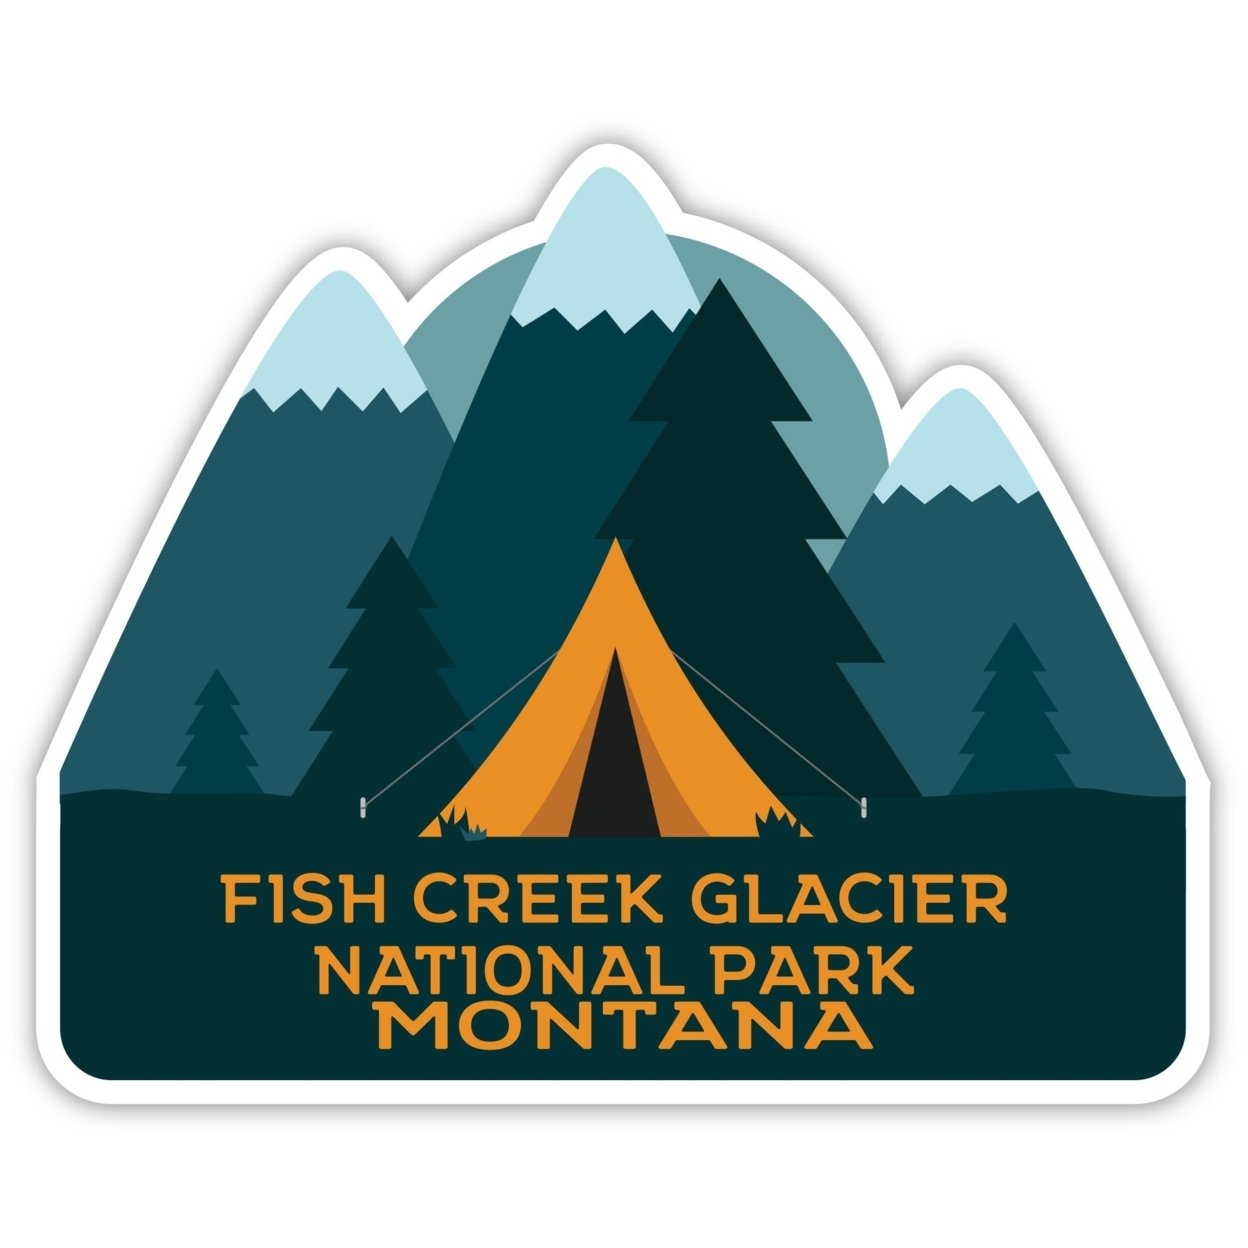 Fish Creek Glacier National Park Montana Souvenir Decorative Stickers (Choose Theme And Size) - Single Unit, 8-Inch, Tent